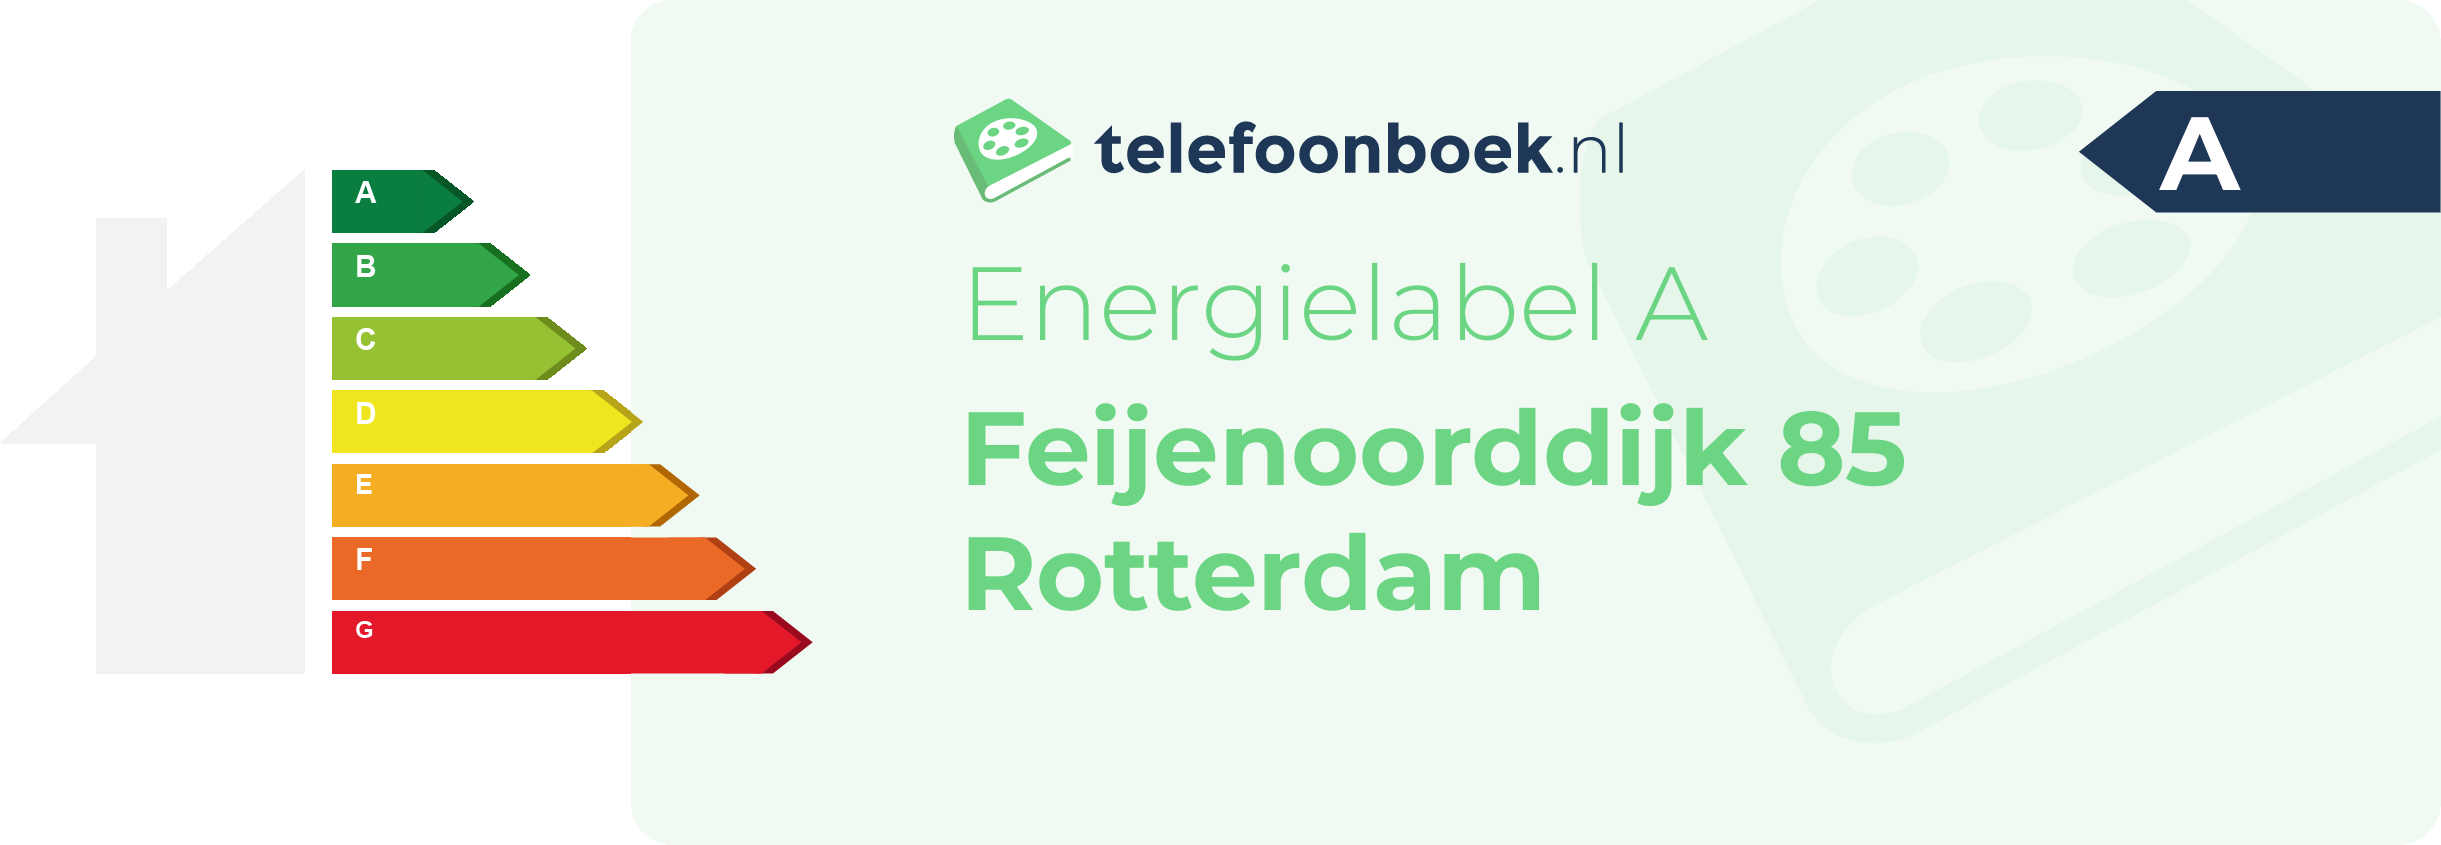 Energielabel Feijenoorddijk 85 Rotterdam